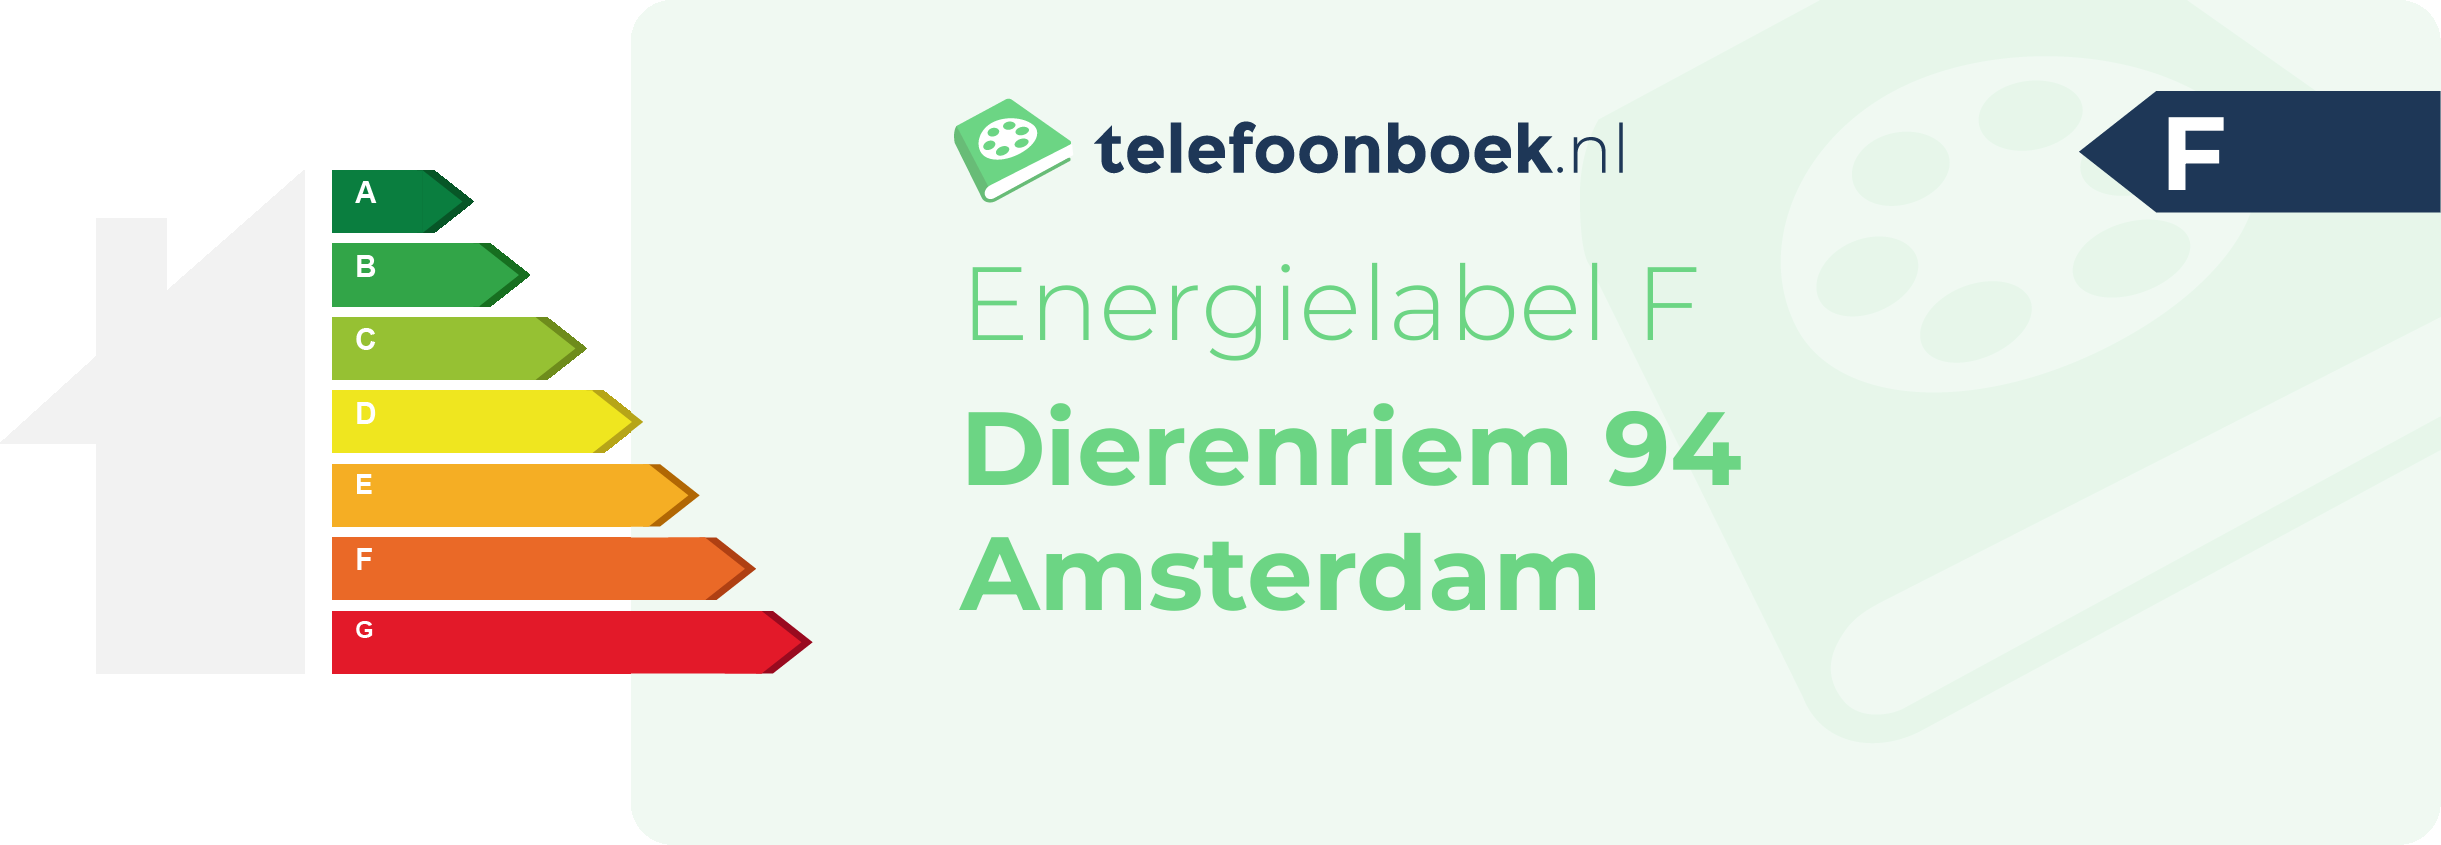 Energielabel Dierenriem 94 Amsterdam